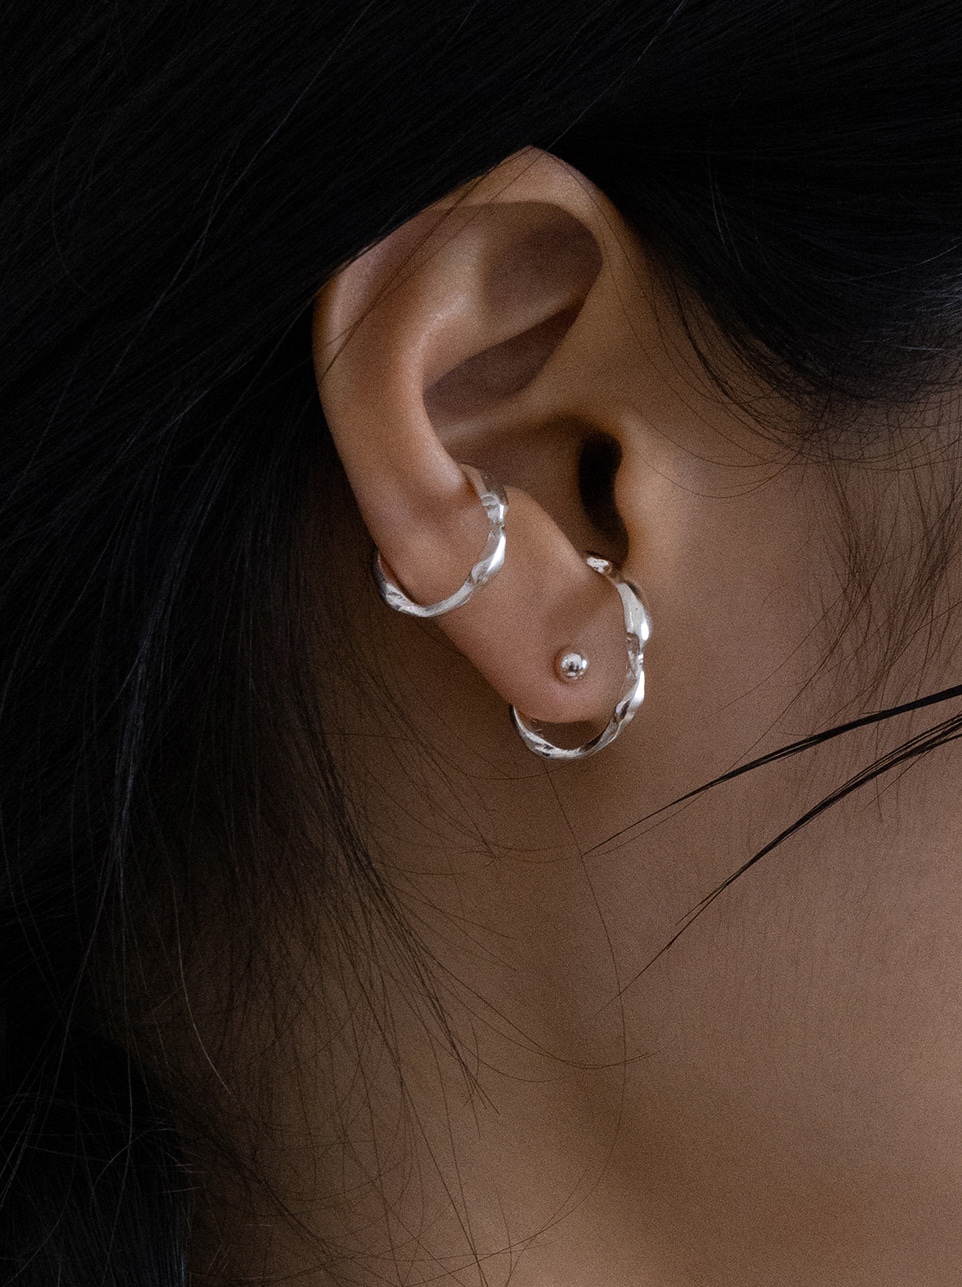 Bone earcuff earring